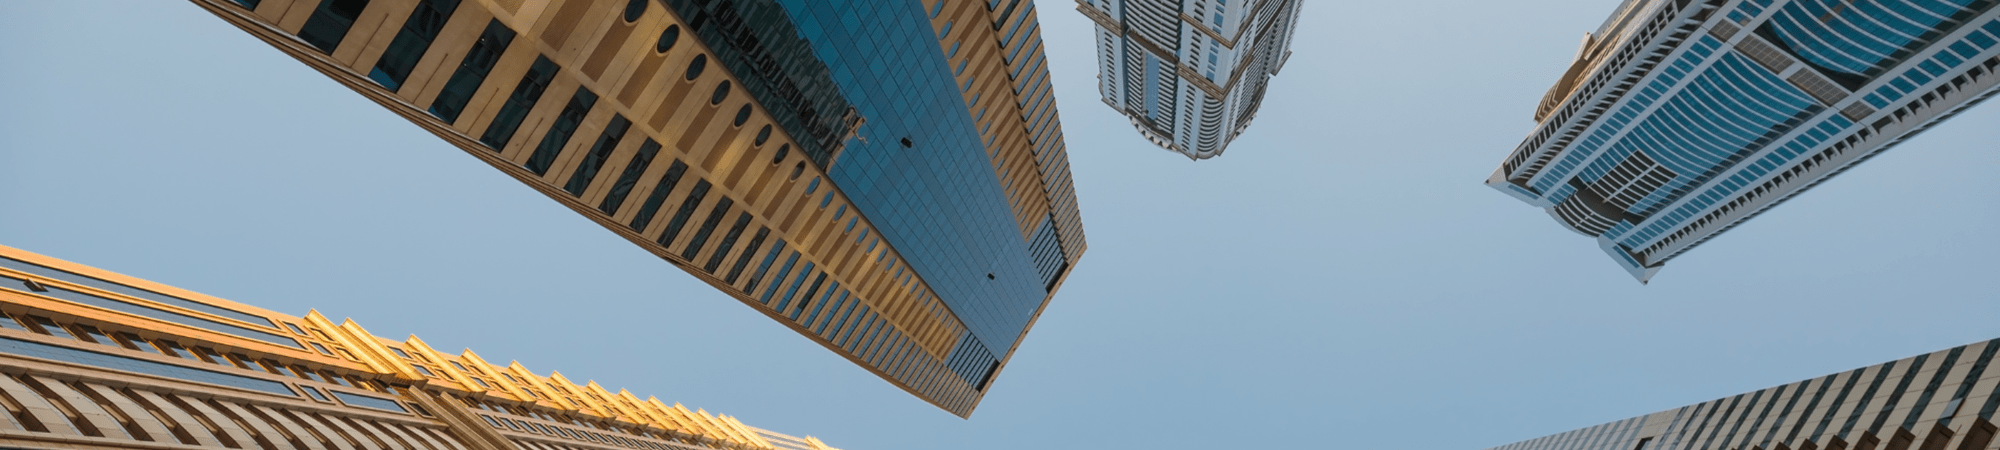 TXM Manpower Solutions | Dubai Skyline 